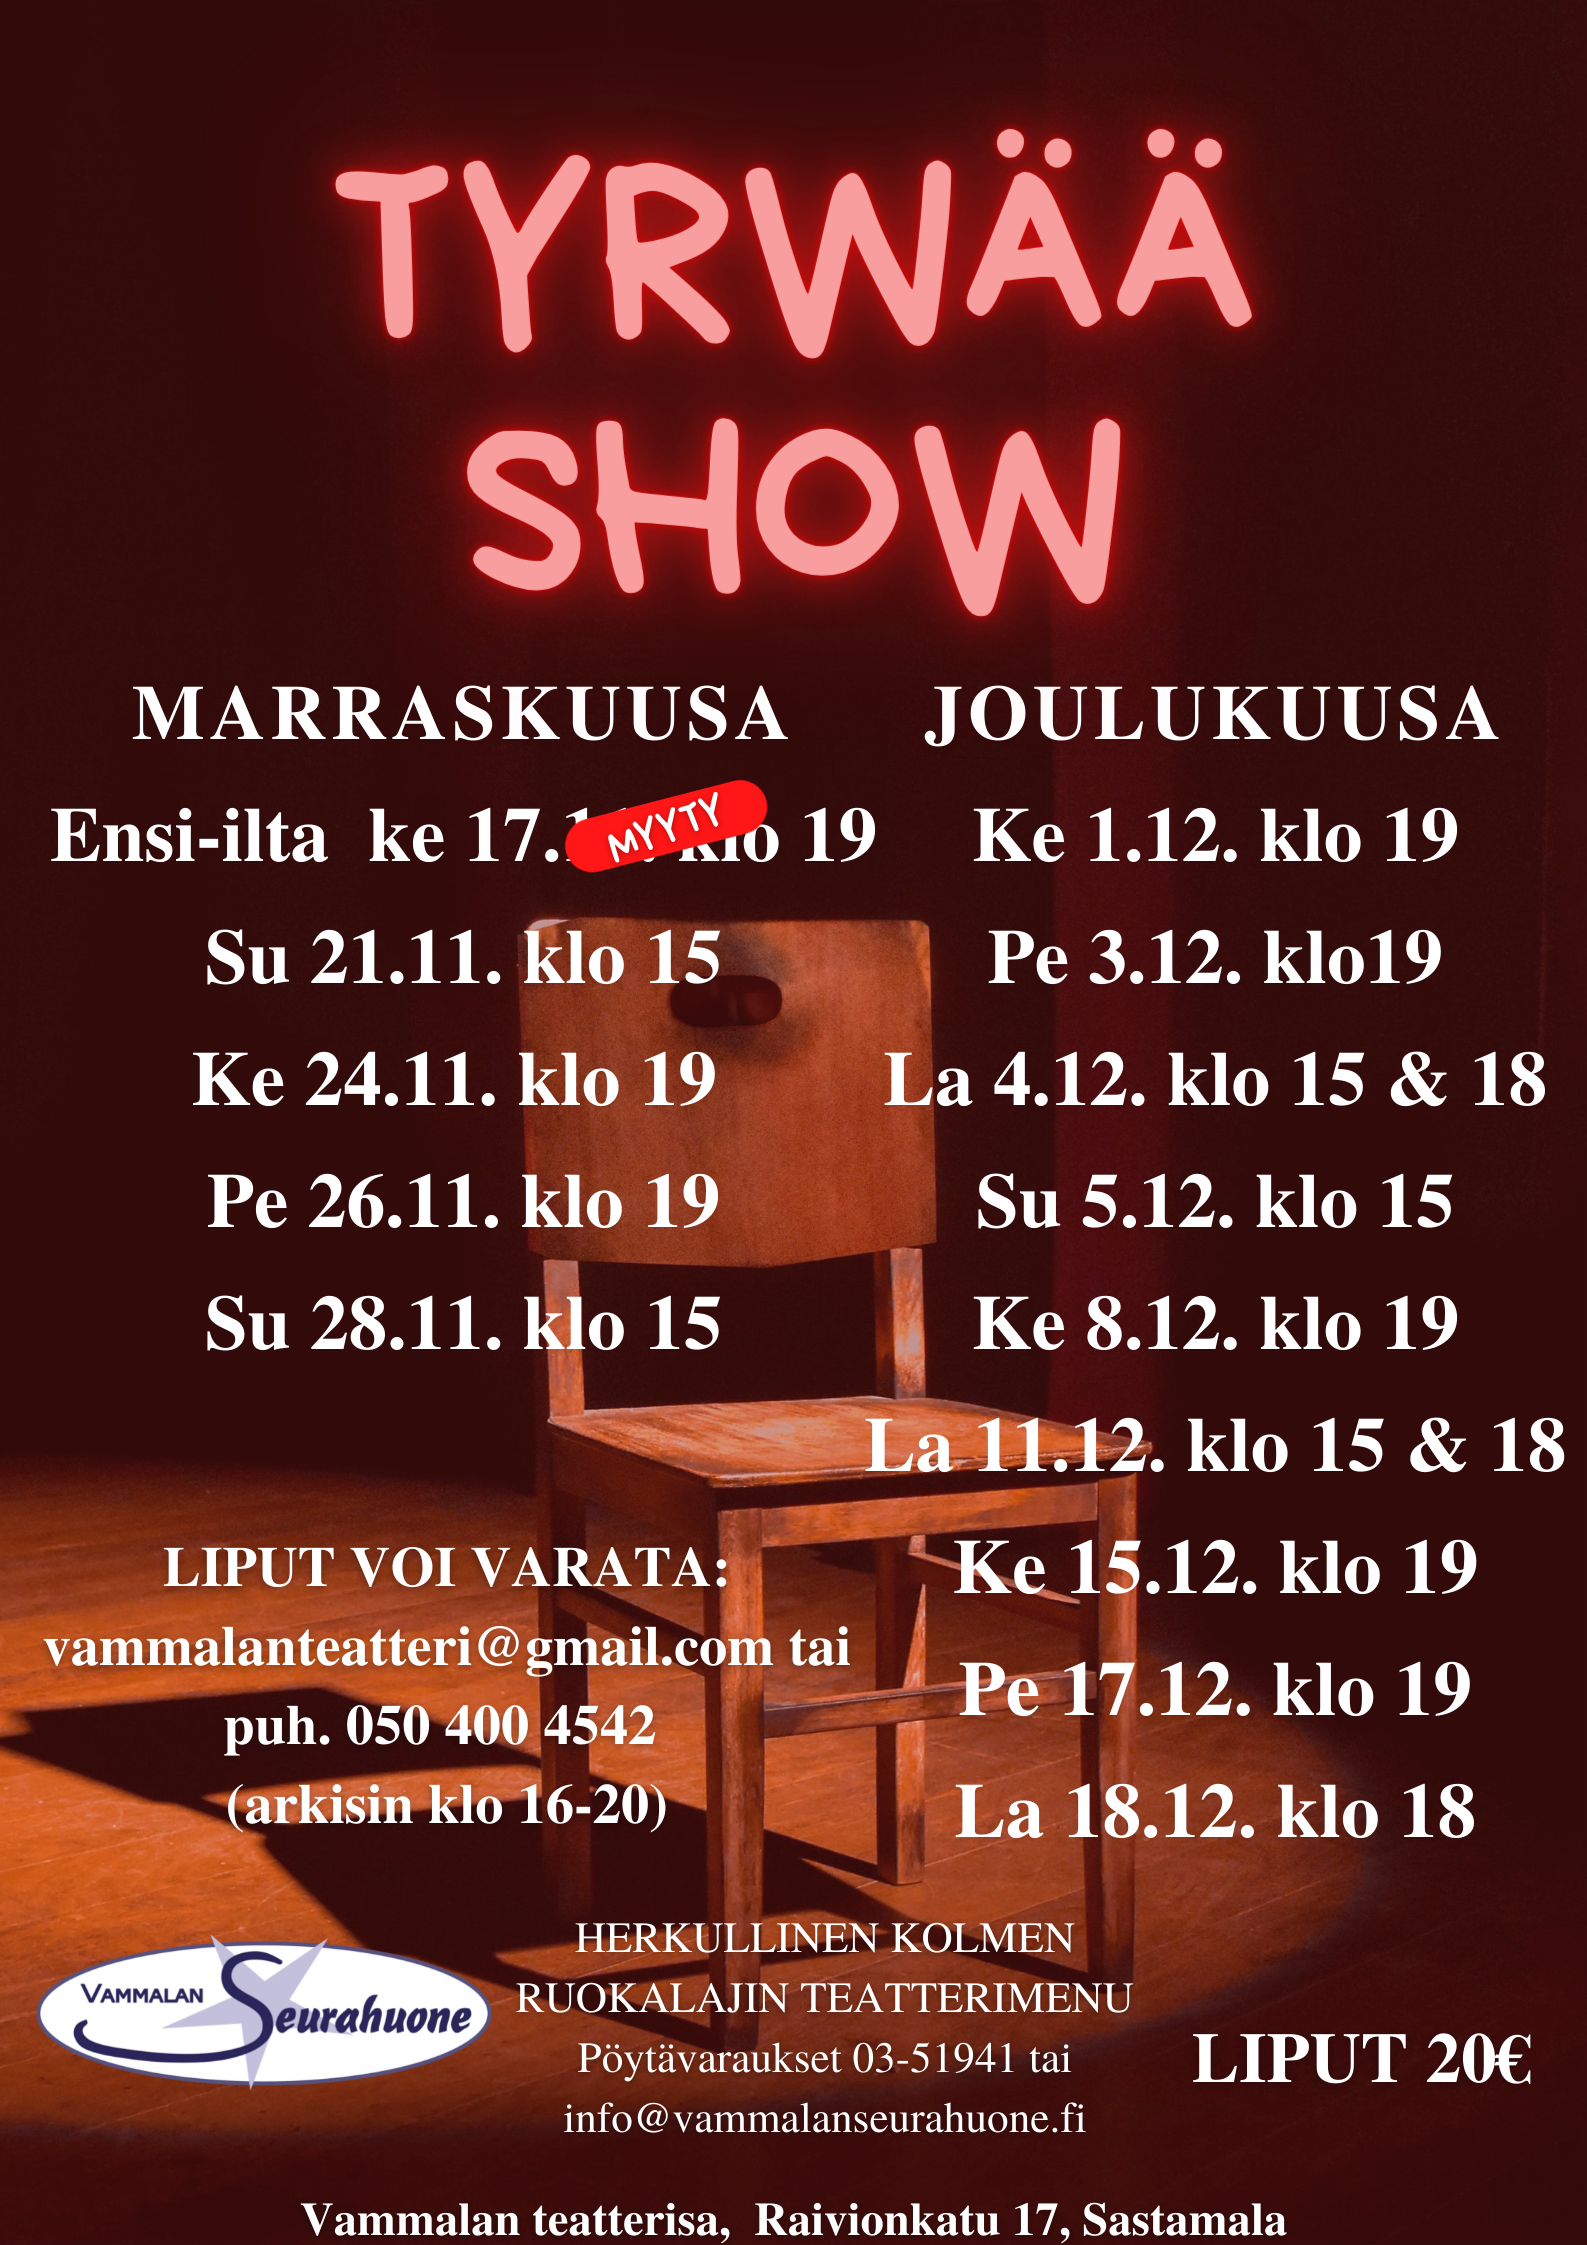 Kopio_tyrwaa_show20myydyt-5.png